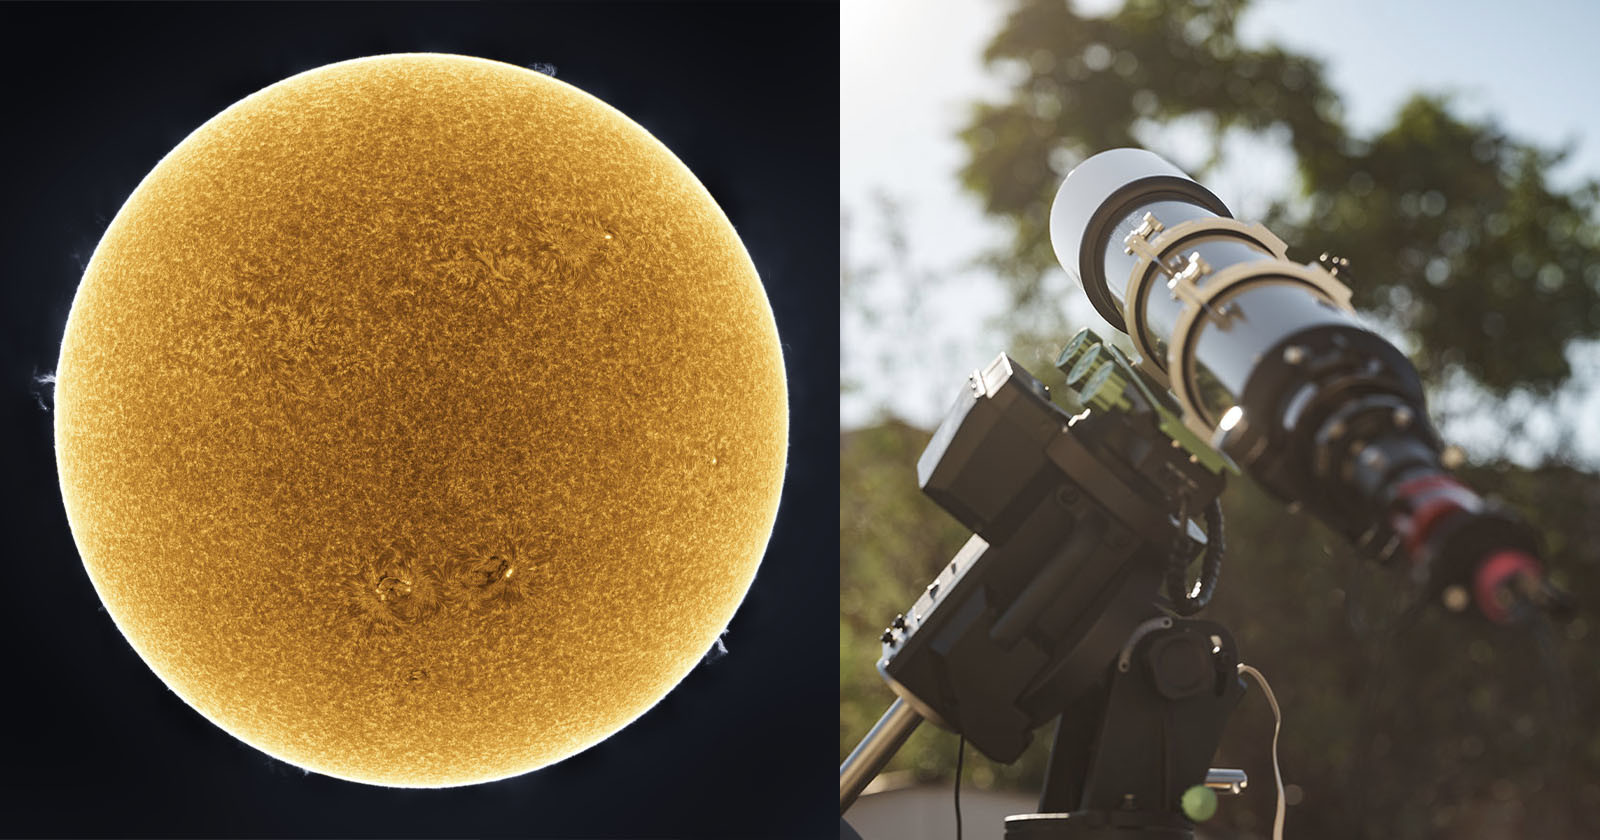  closer look how created 248mp photo sun 